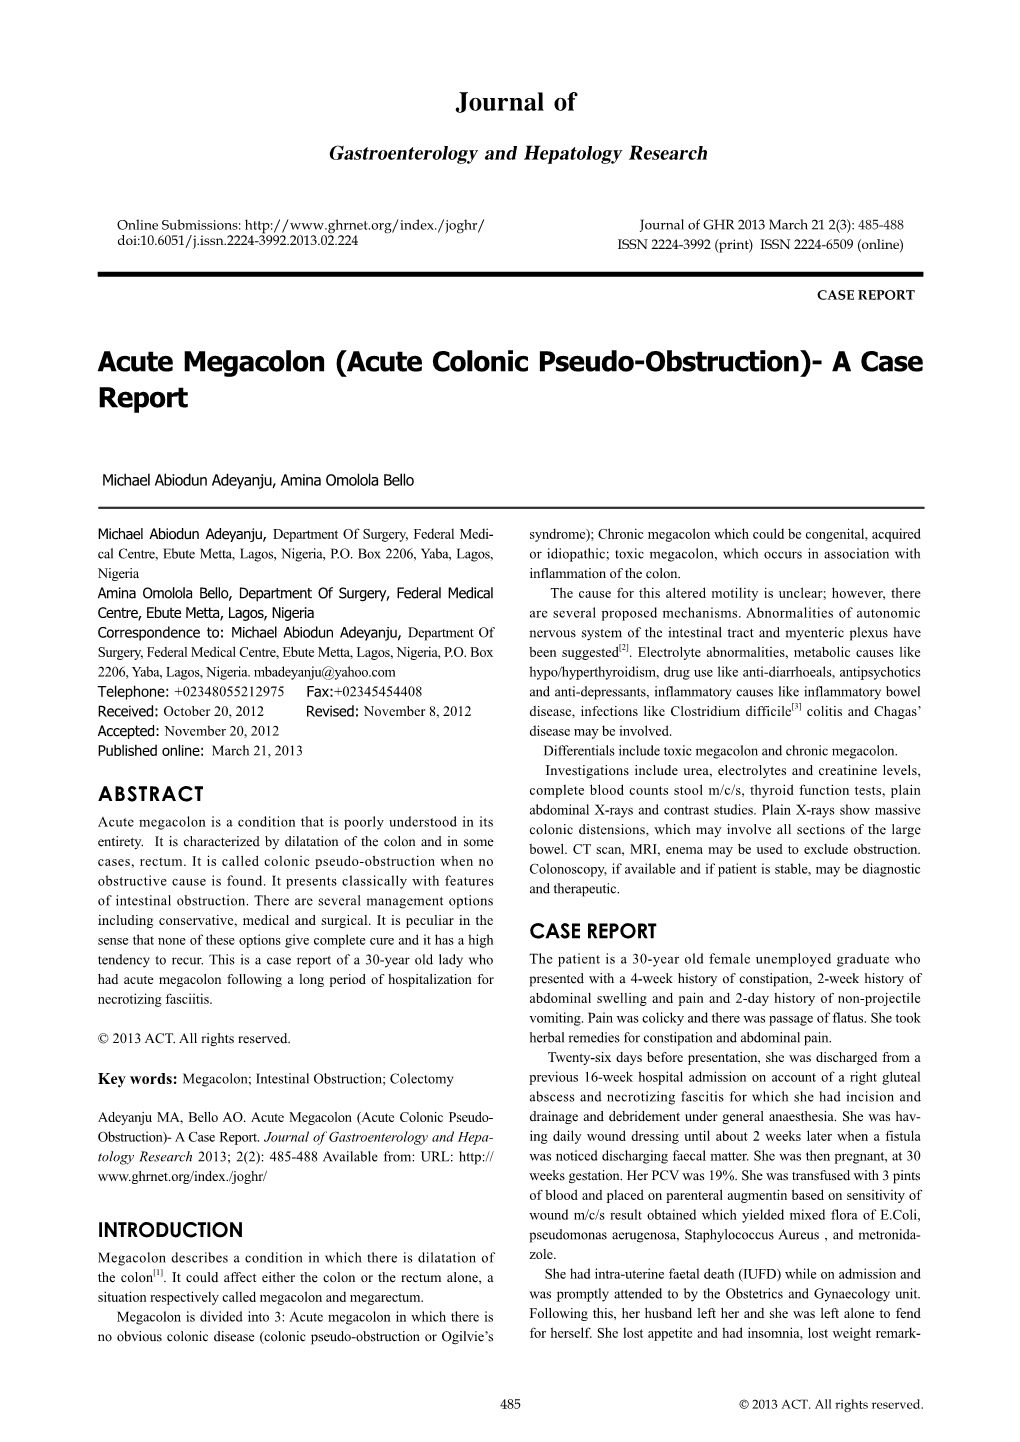 Acute Megacolon (Acute Colonic Pseudo-Obstruction)- a Case Report